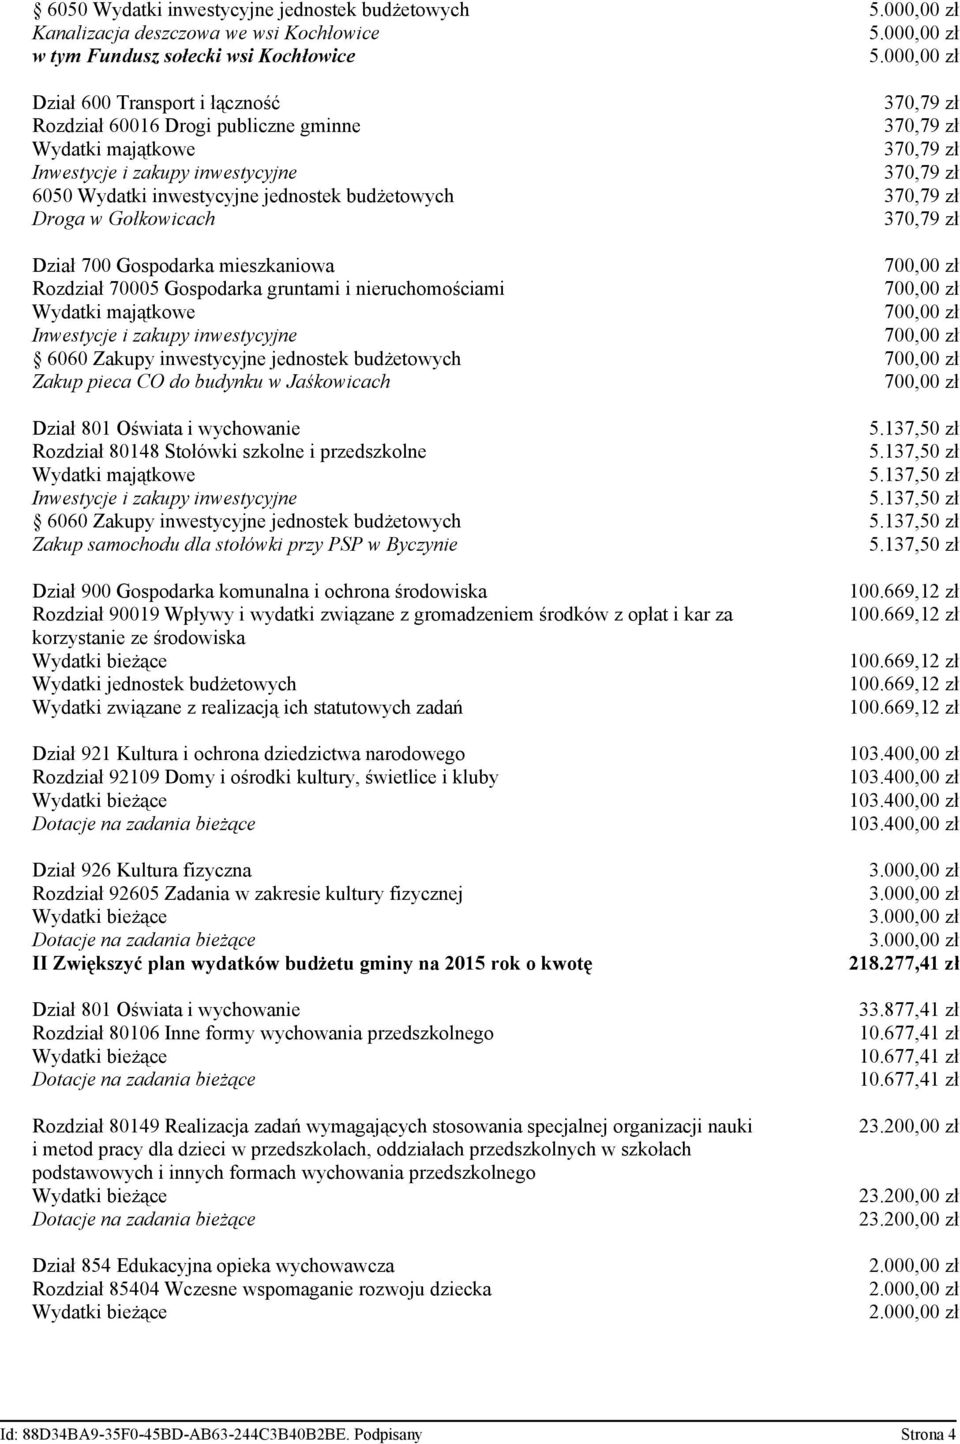 nieruchomościami 6060 Zakupy inwestycyjne jednostek budżetowych Zakup pieca CO do budynku w Jaśkowicach 5.137,50 zł Rozdział 80148 Stołówki szkolne i przedszkolne 5.137,50 zł 5.